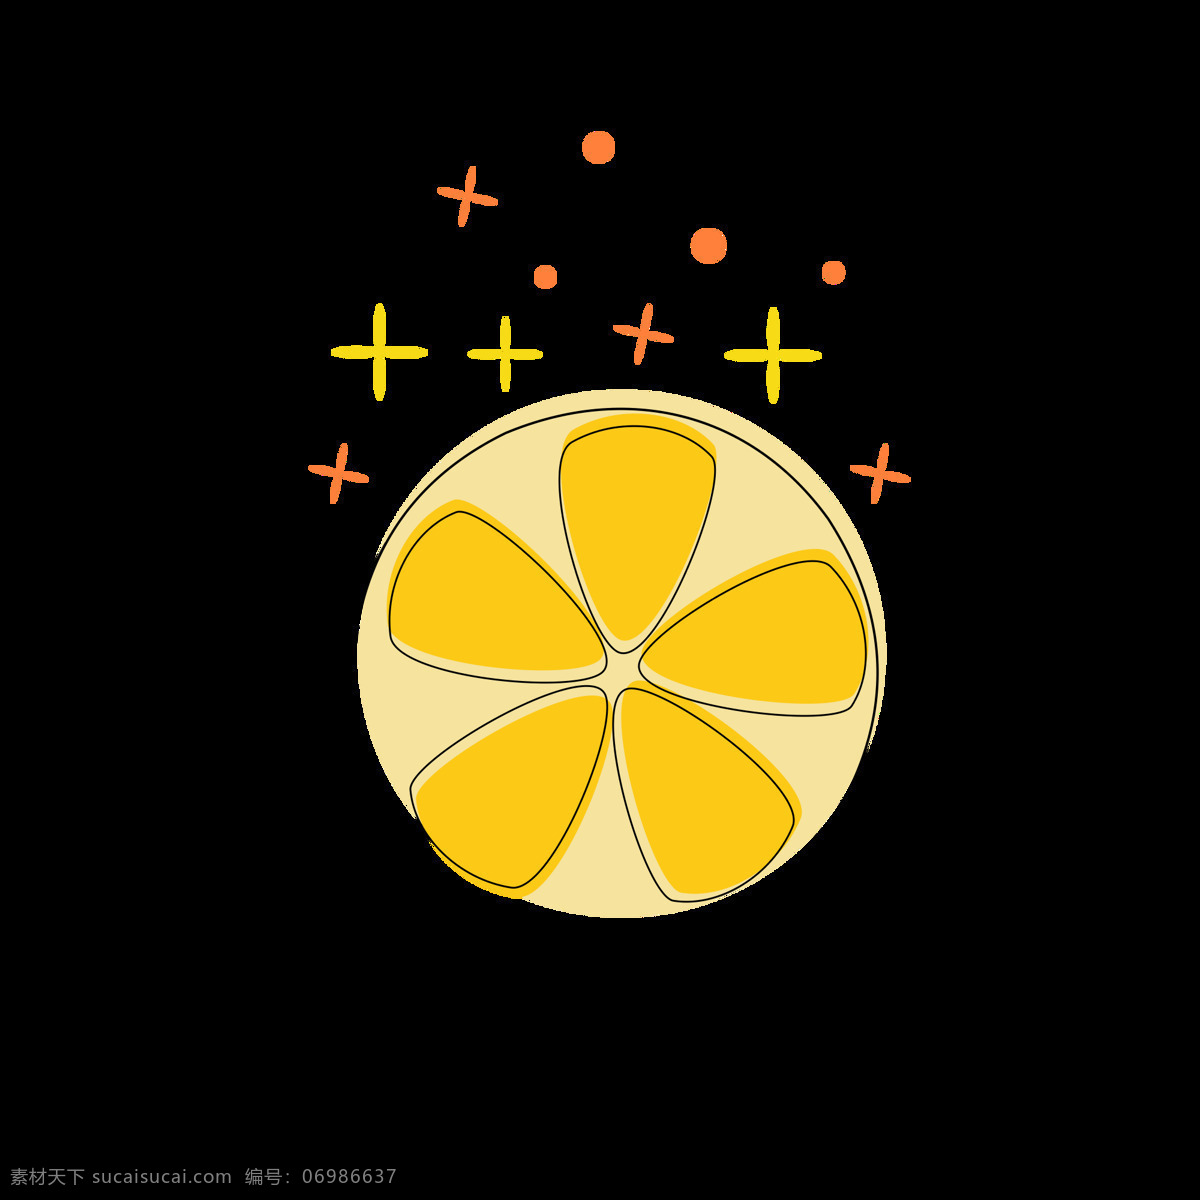 mbe 图标 元素 卡通 可爱 水果 图案 柠檬 简约 mbe图标 元素设计